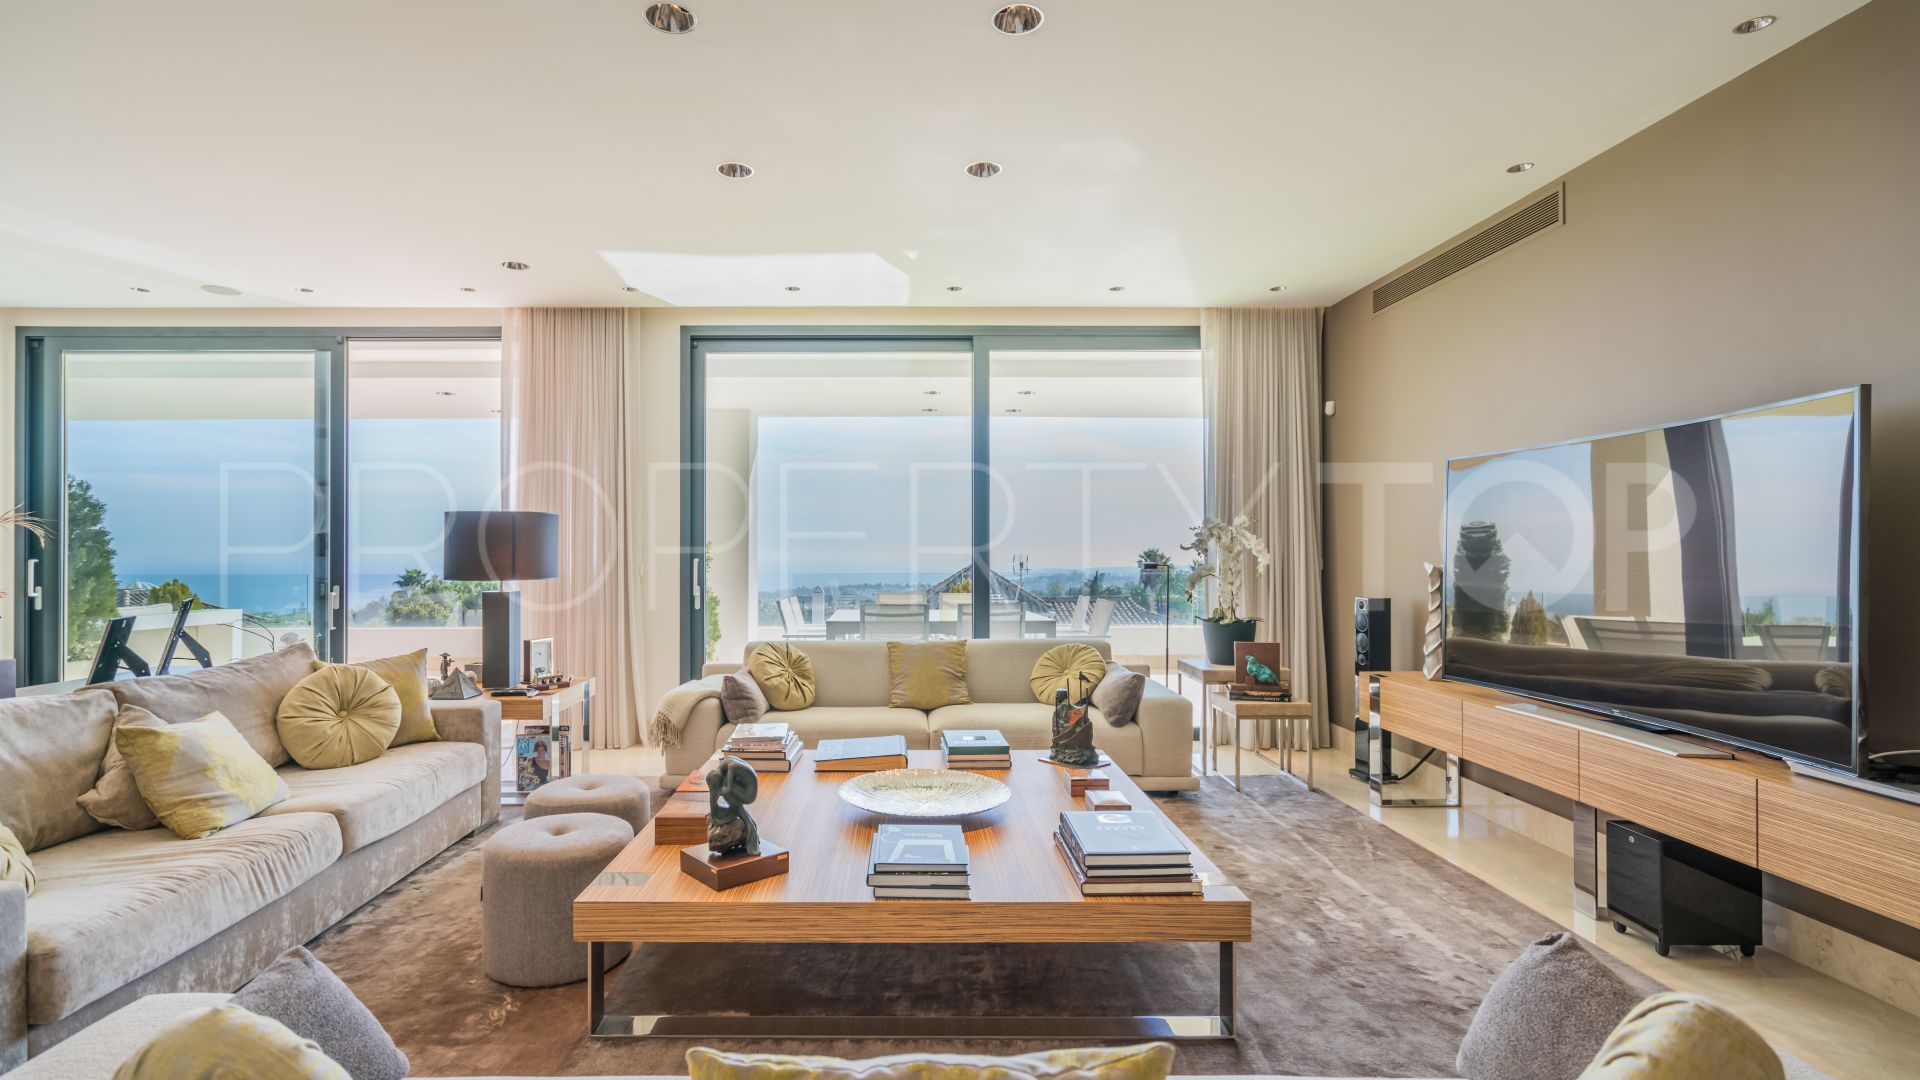 Reserva de Sierra Blanca 5 bedrooms duplex penthouse for sale